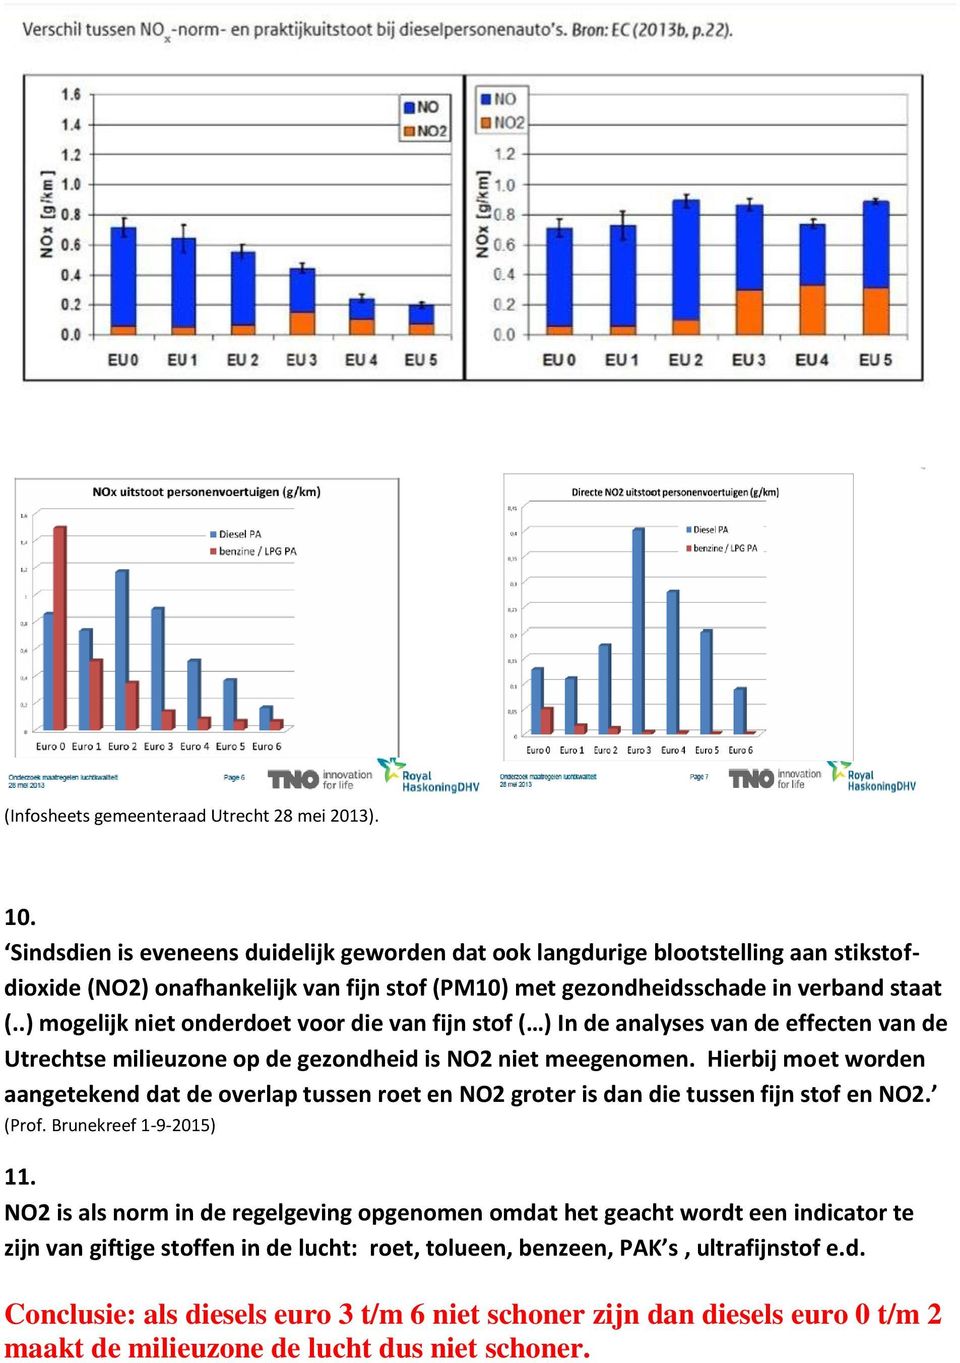 .) mogelijk niet onderdoet voor die van fijn stof ( ) In de analyses van de effecten van de Utrechtse milieuzone op de gezondheid is NO2 niet meegenomen.